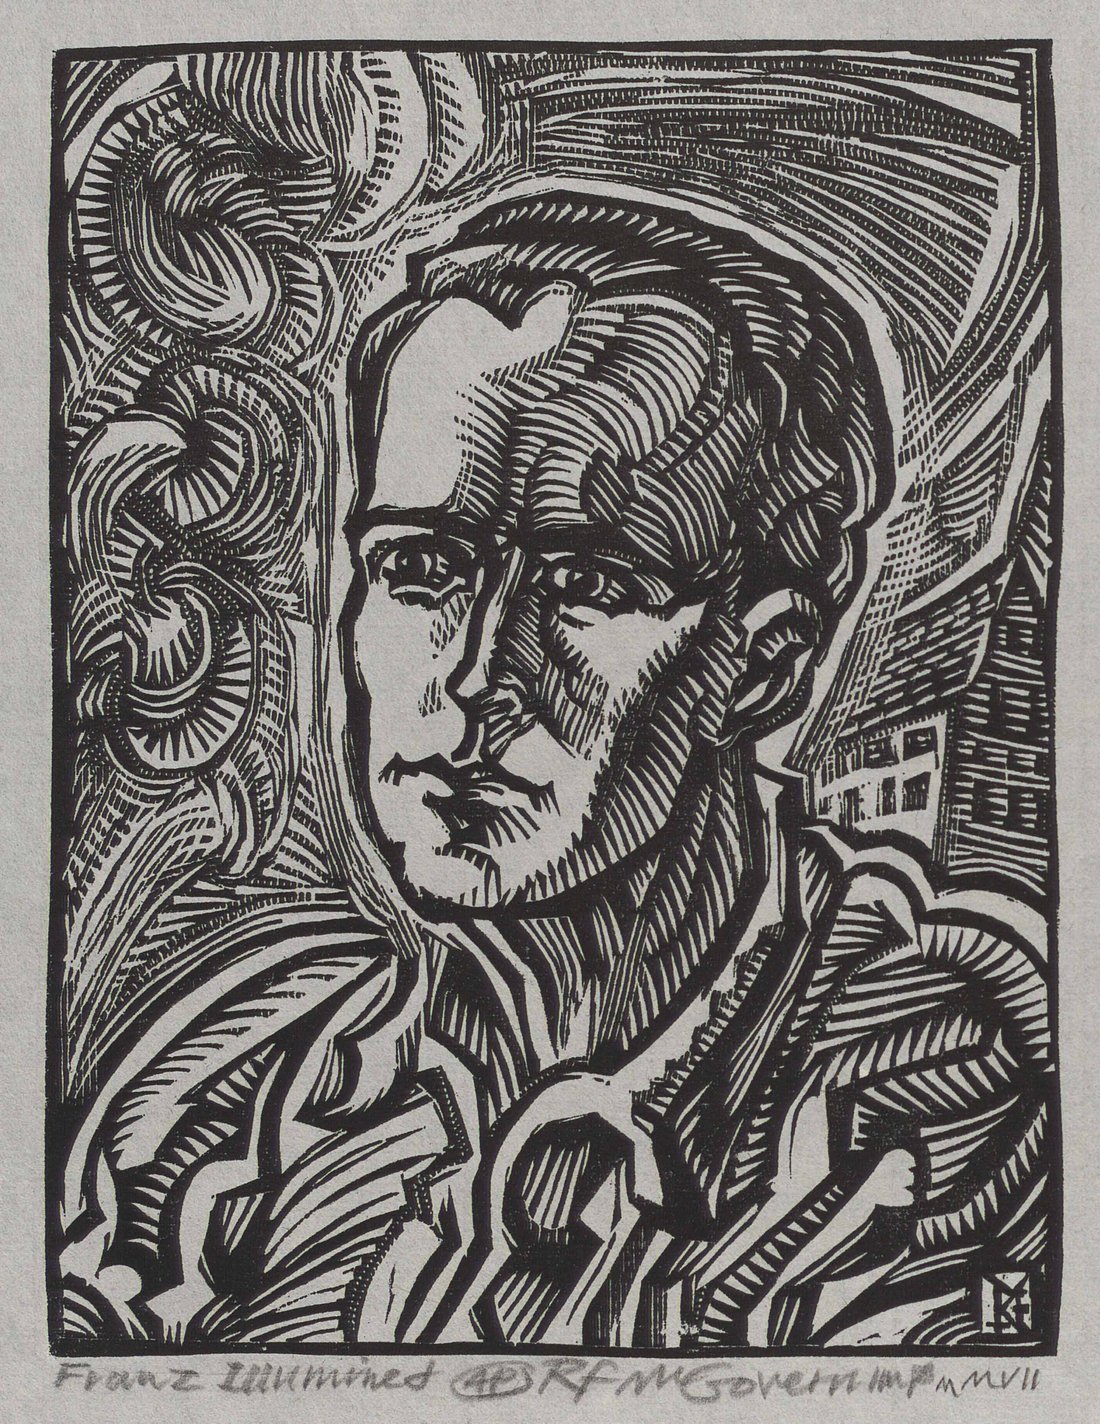 Holzschnitt Robert McGovern "Franz Illumined", (c) Diözese Linz.